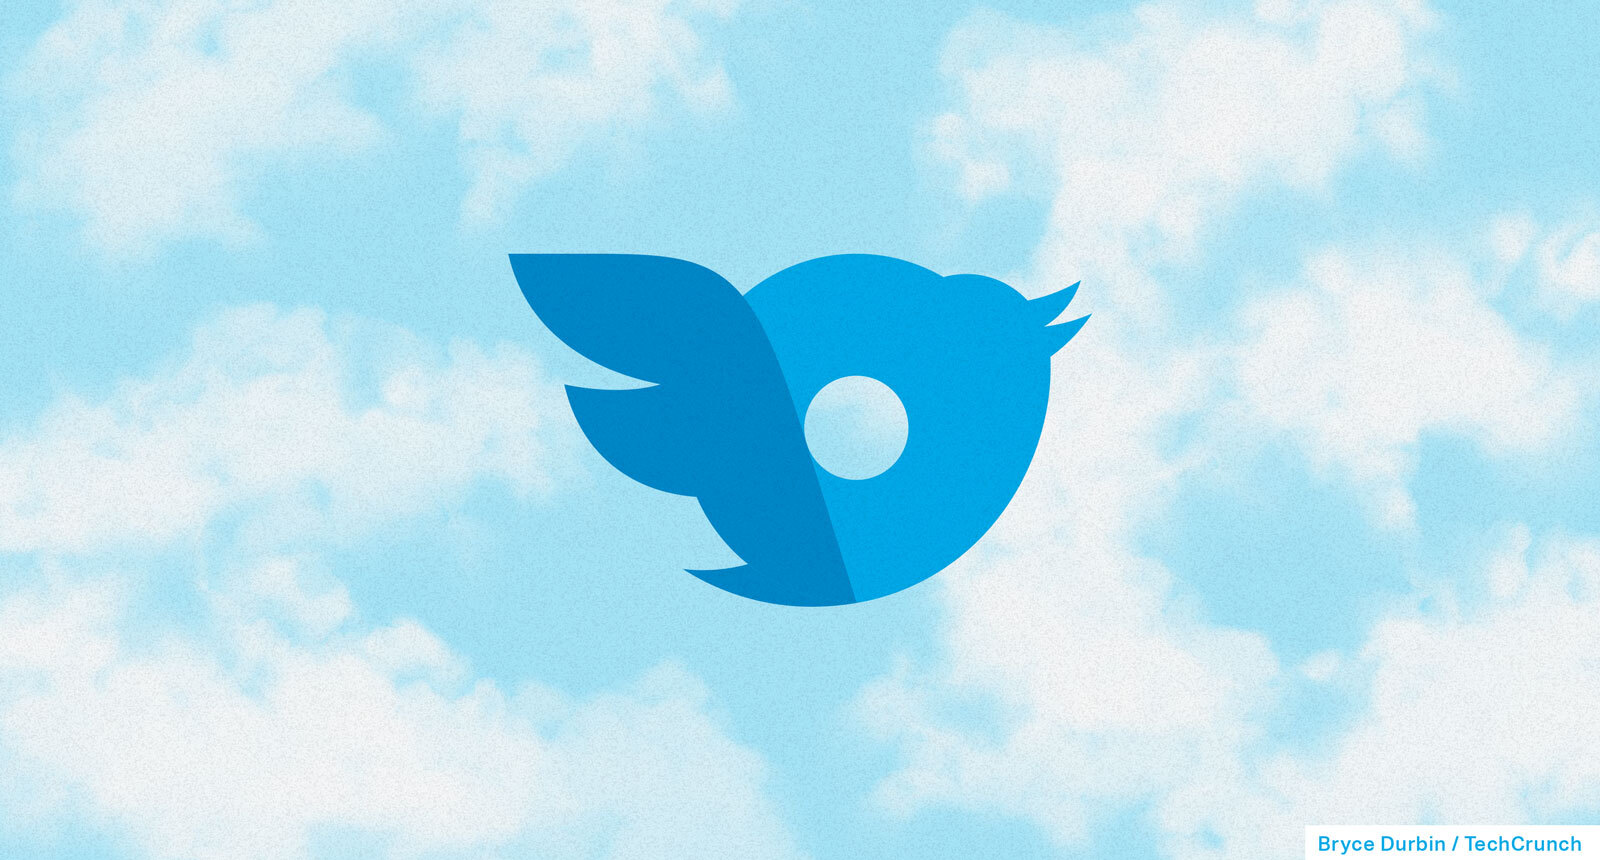 Logo Twitter dan onlyfans dicampur dengan latar belakang mendung